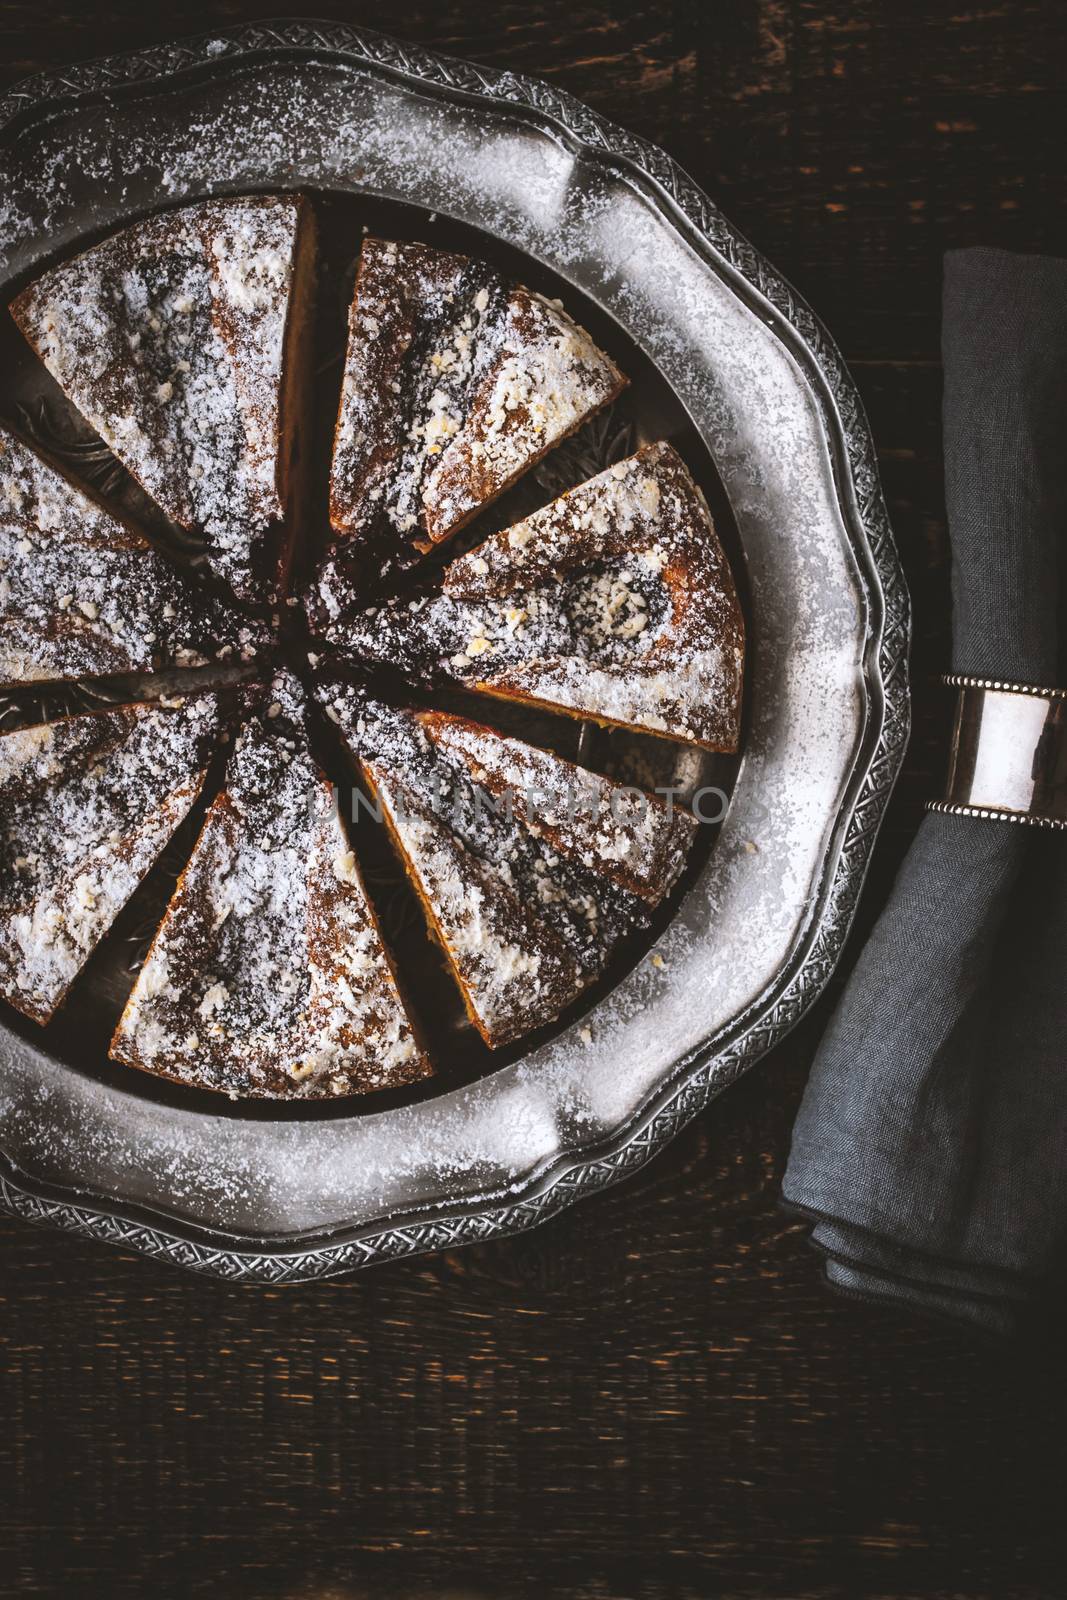 Sliced cake with powdered sugar by Deniskarpenkov